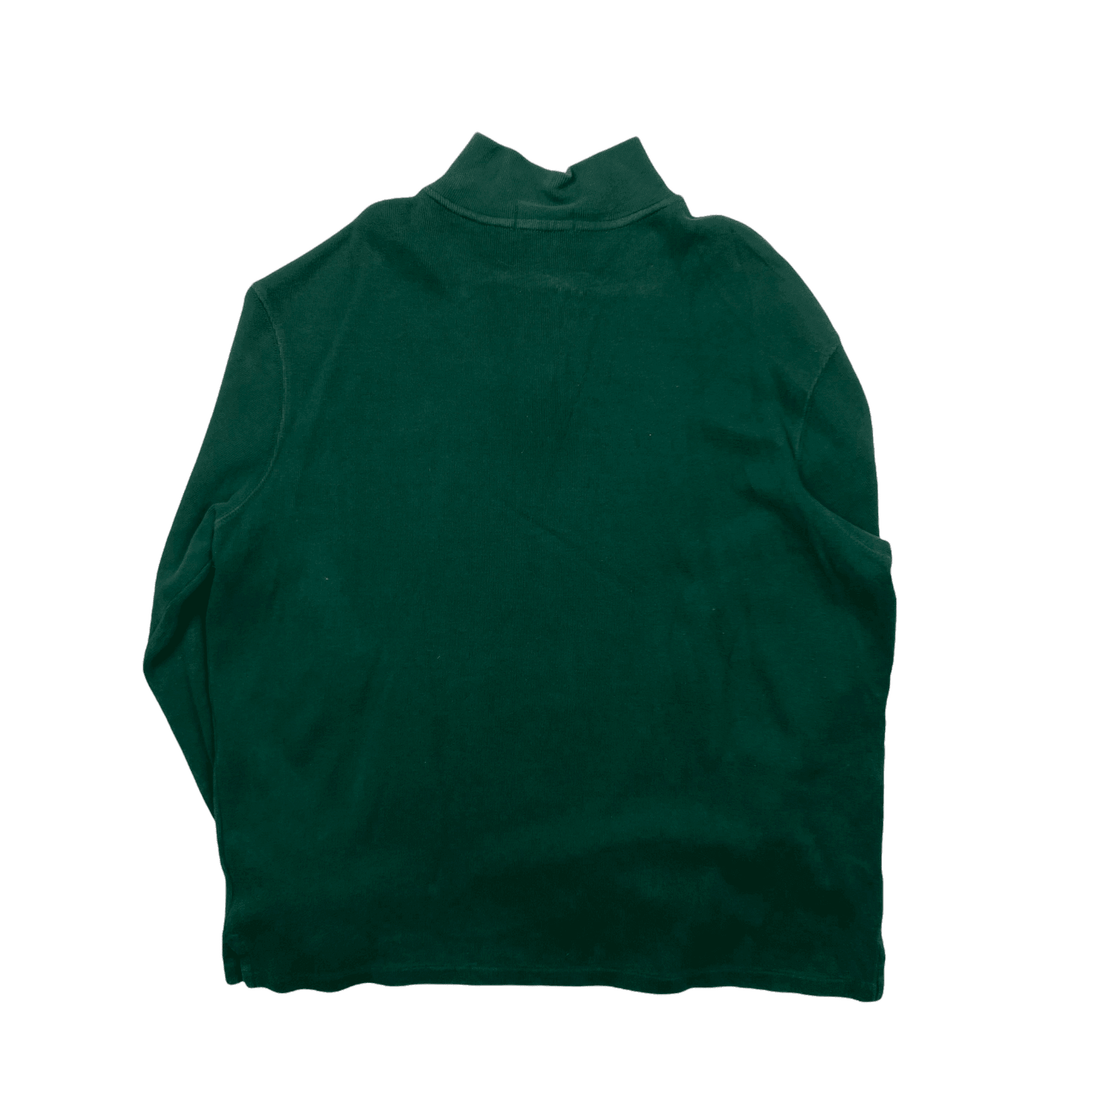 Vintage 90s Green Polo Ralph Lauren Quarter Zip Sweatshirt - Extra Large - The Streetwear Studio